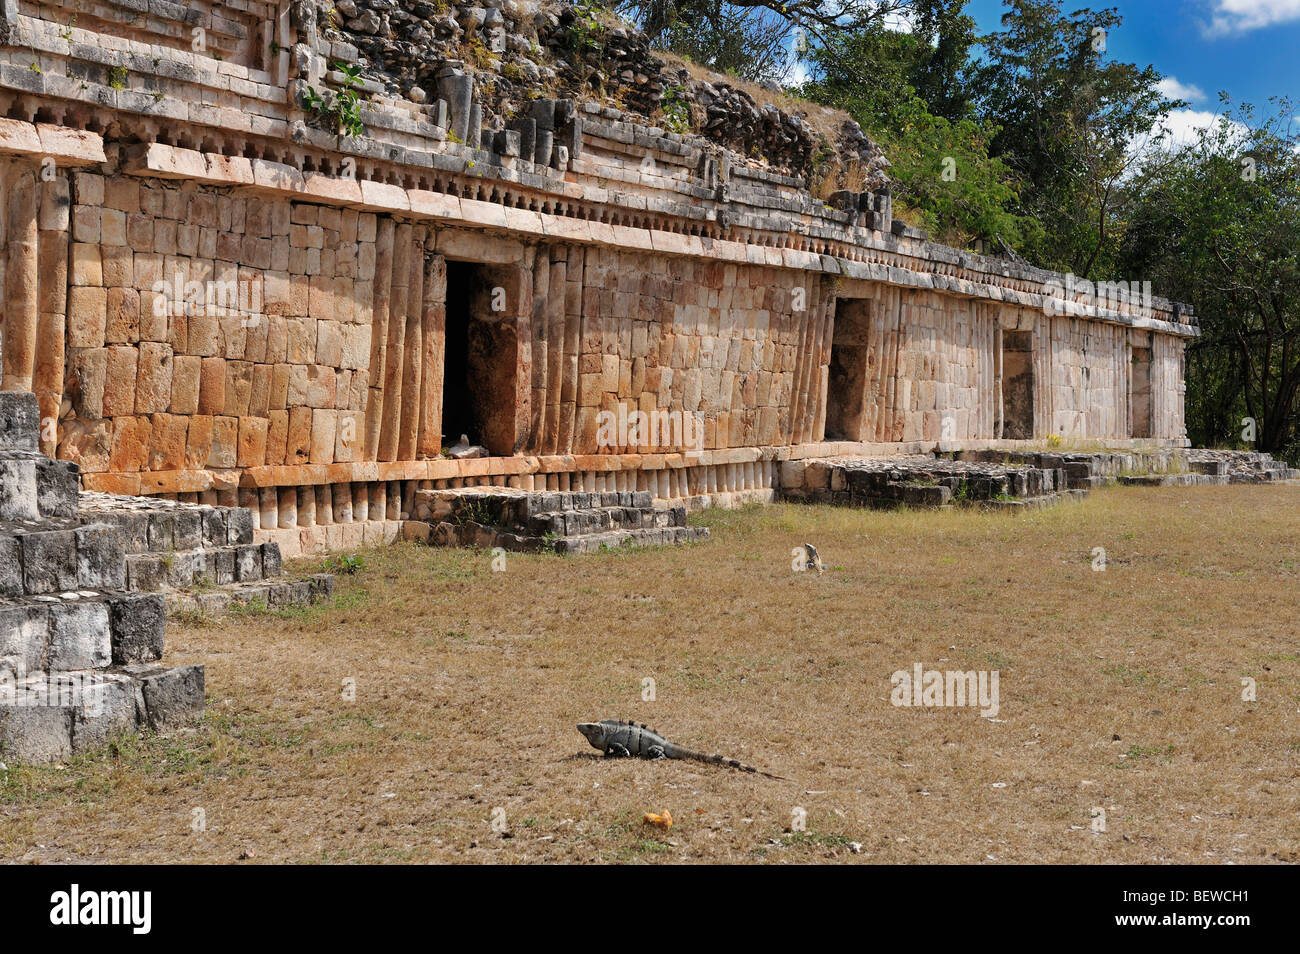 Exterior view of The Palace (Gran Palacio) at the Maya ruin site of Labna, Yucatan, Mexico Stock Photo